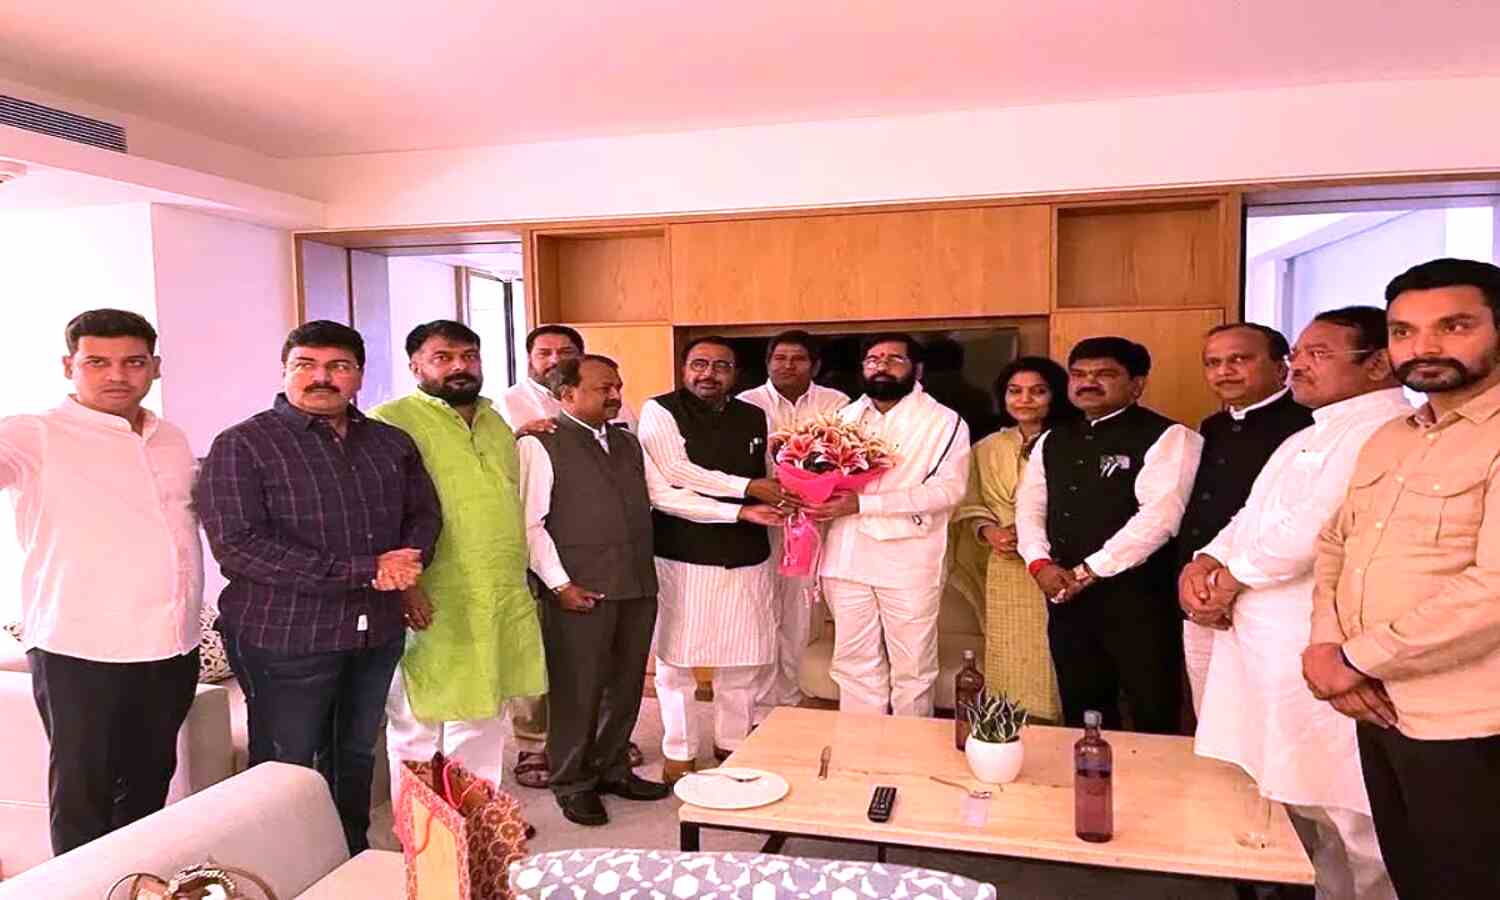 Maharashtra News : शिवसेना के 12 विधायकों के साथ संसद पहुंचे एकनाथ शिंदे, लोकसभा में शिंदे गुट को मिली मान्यता